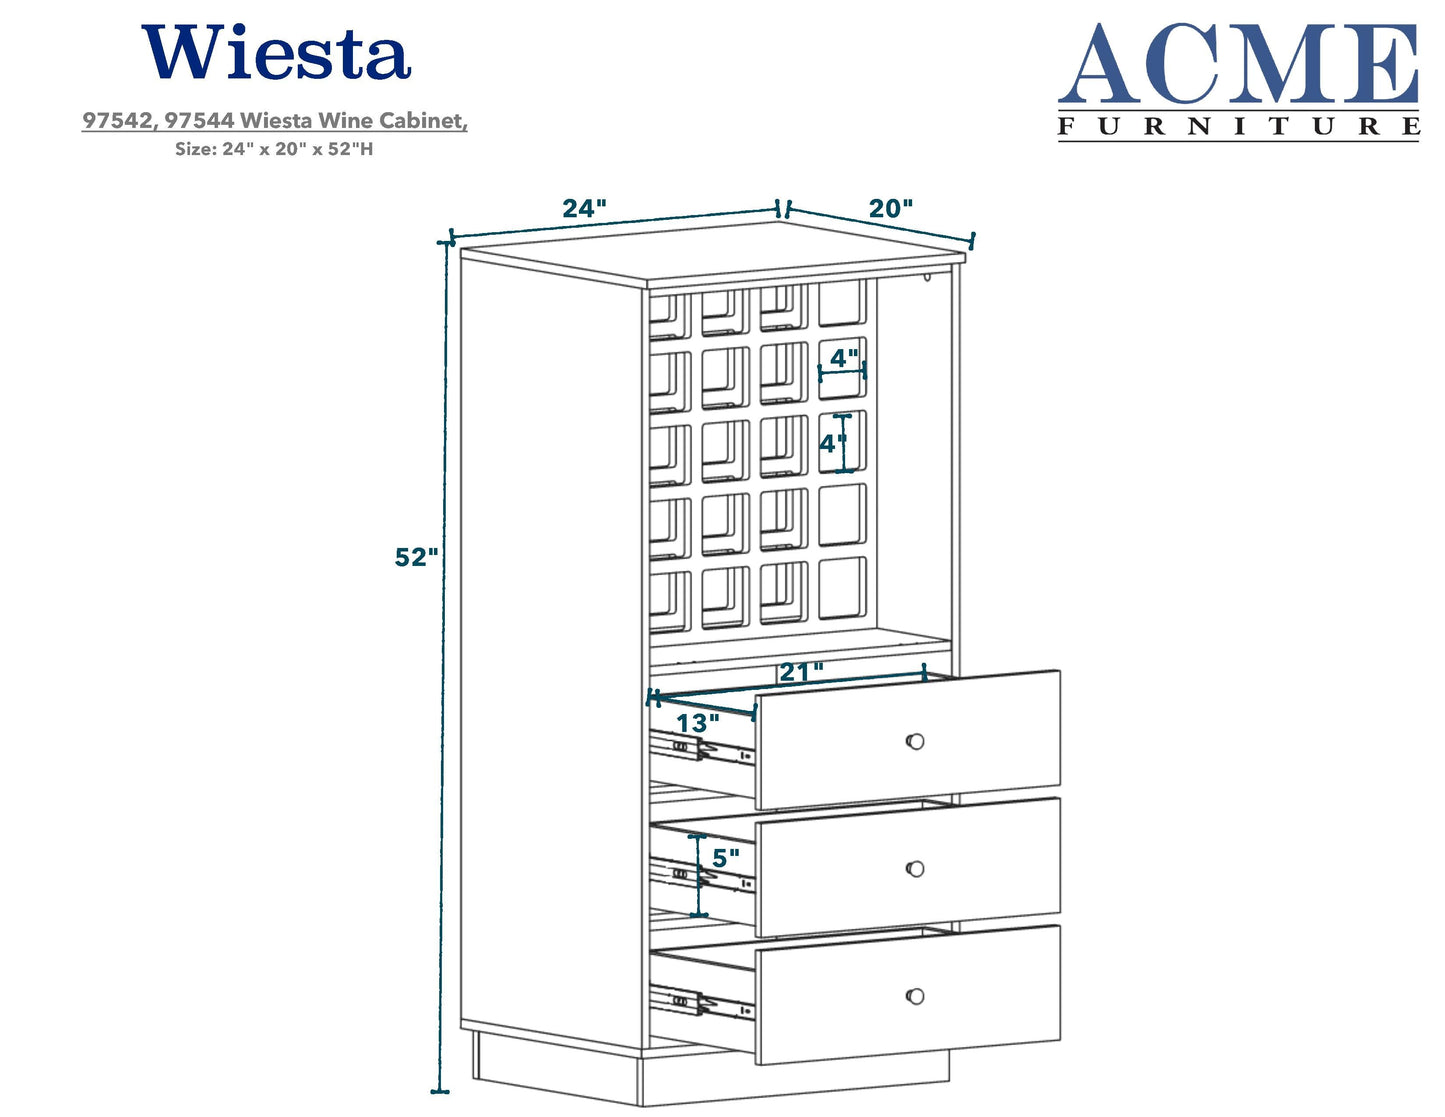 Wiesta Wine Cabinet in Antique White 97544